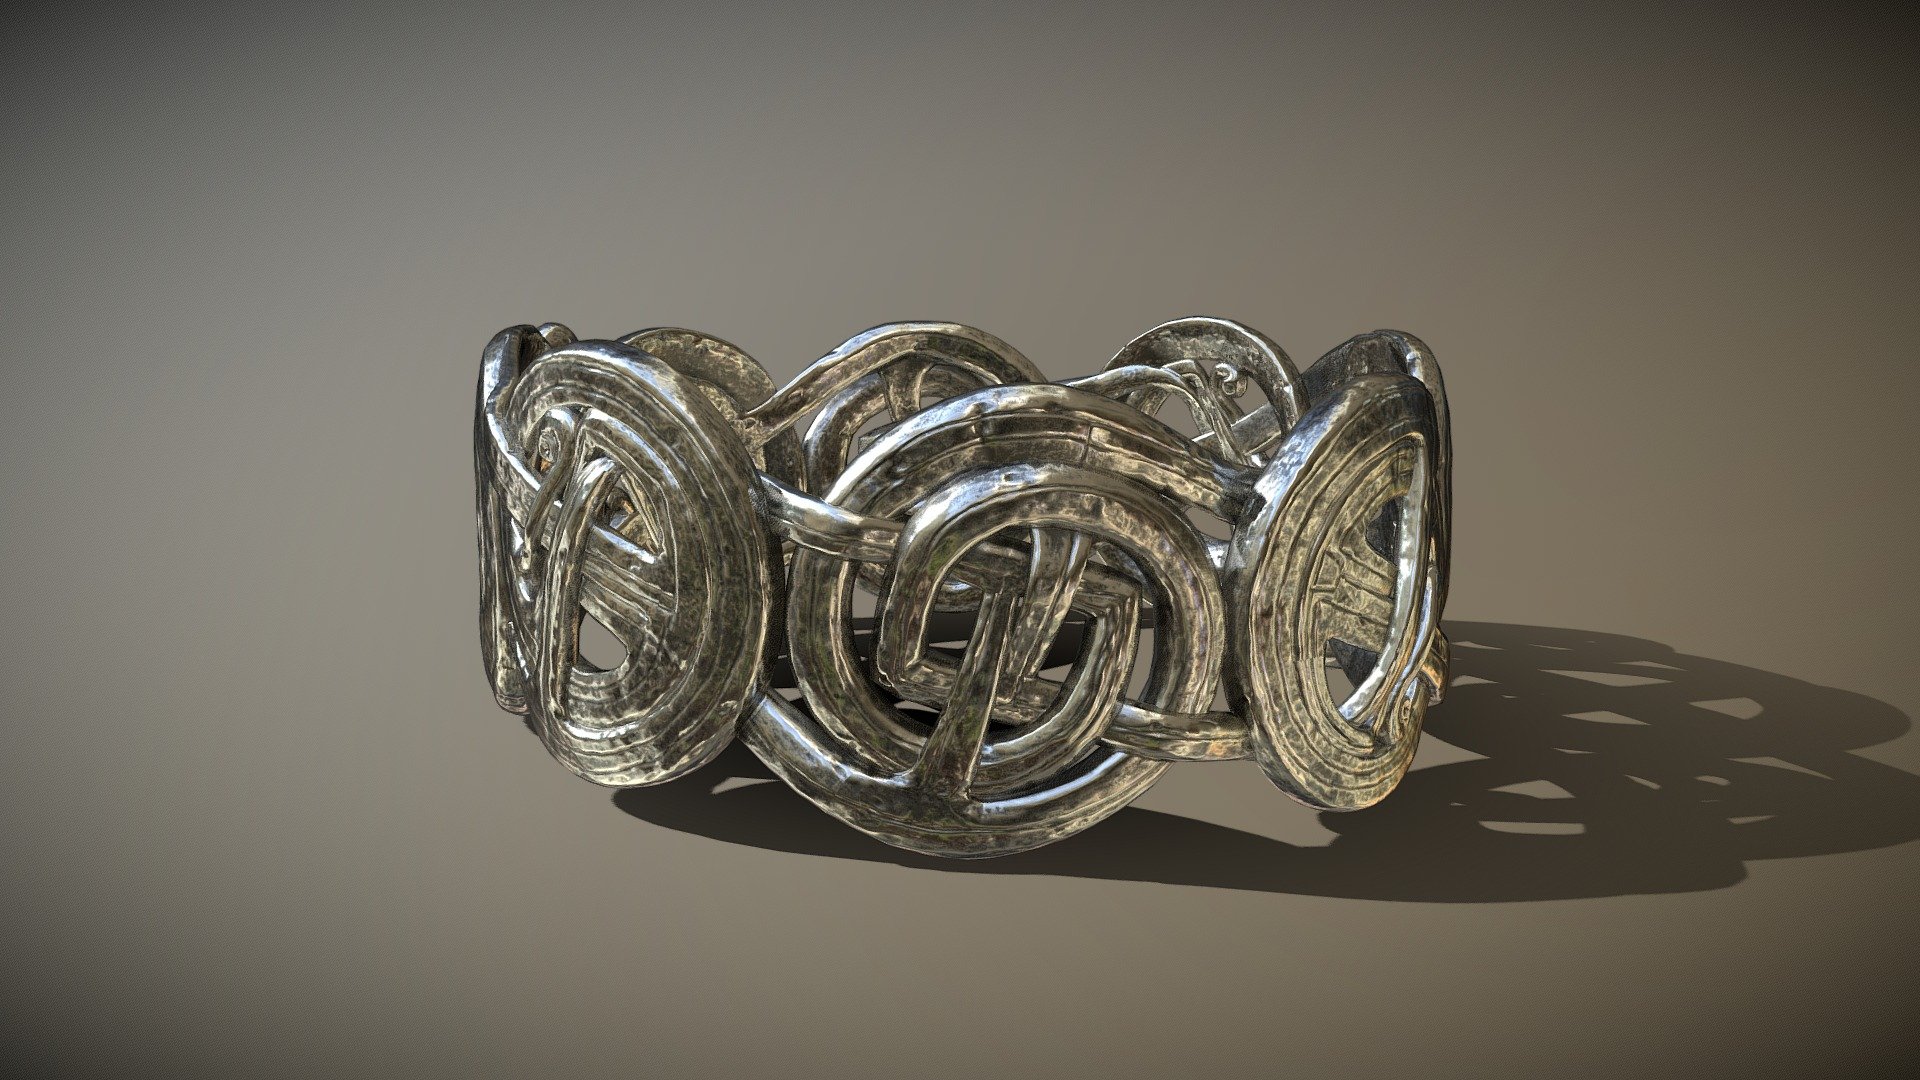 celtic ring